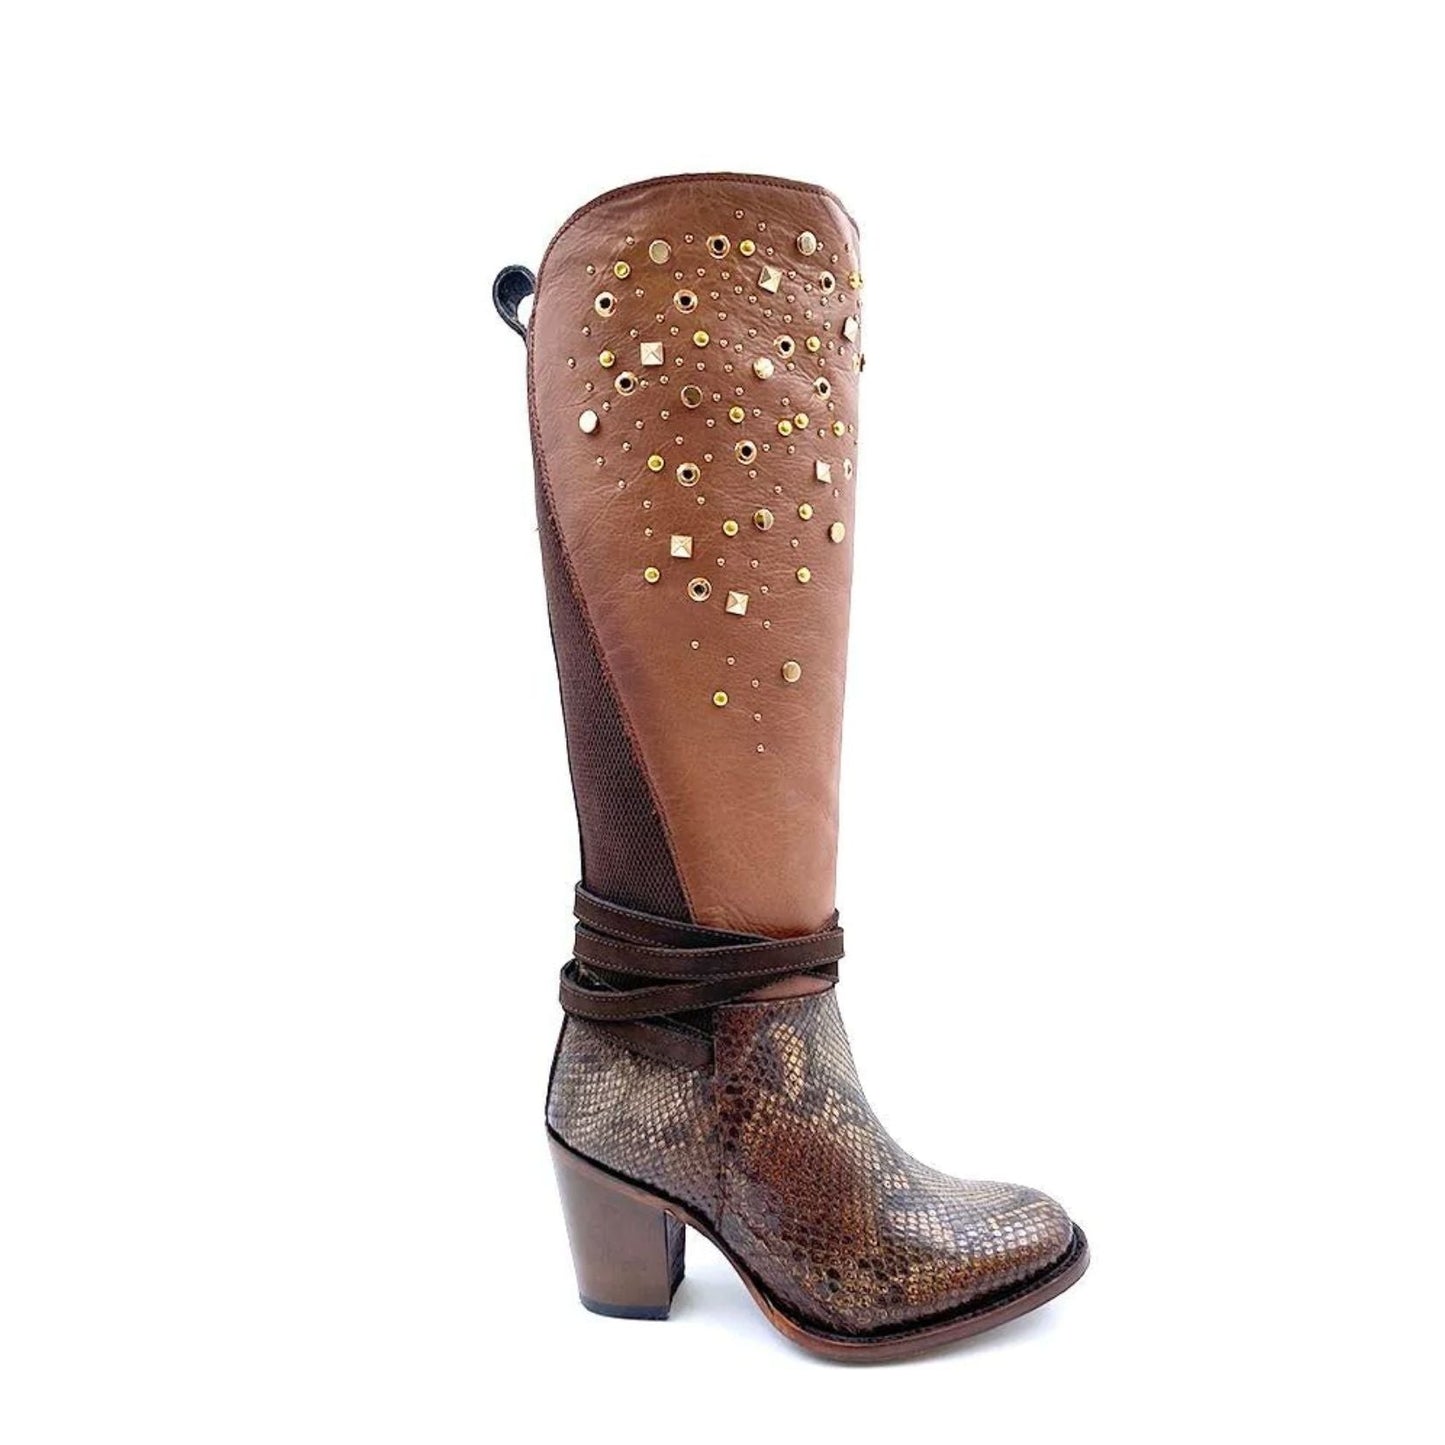 3W03PH - Cuadra clay western cowboy python boots for women-CUADRA-Kuet-Cuadra-Boots